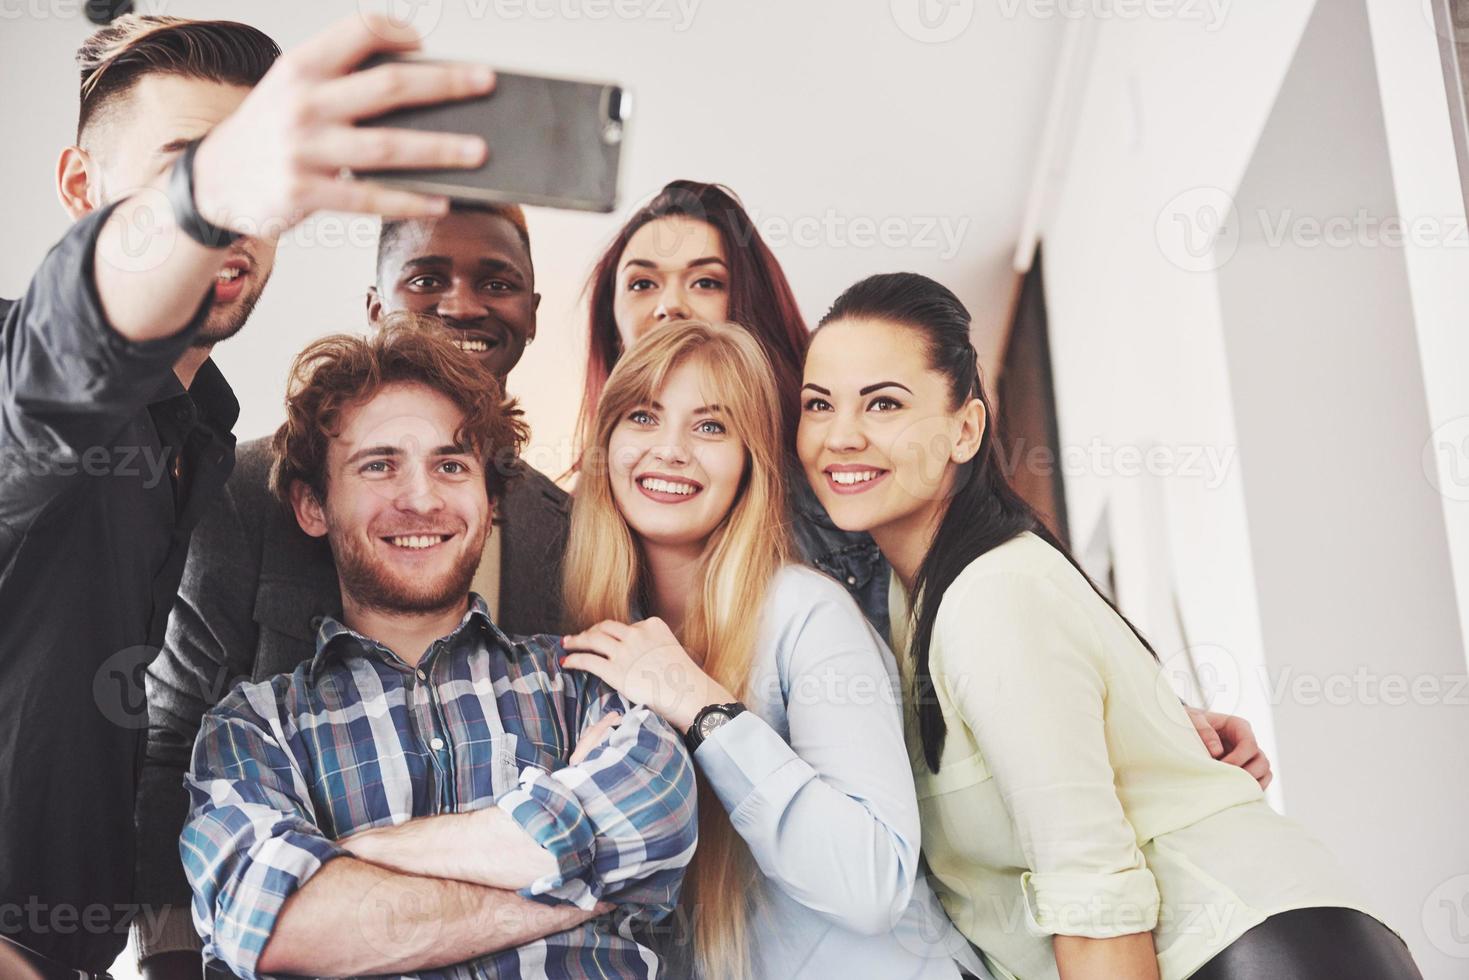 Selfie von jungen lächelnden Teenagern, die zusammen Spaß haben. beste freunde machen selfie im freien mit hintergrundbeleuchtung. glückliches Freundschaftskonzept mit jungen Leuten, die zusammen Spaß haben foto